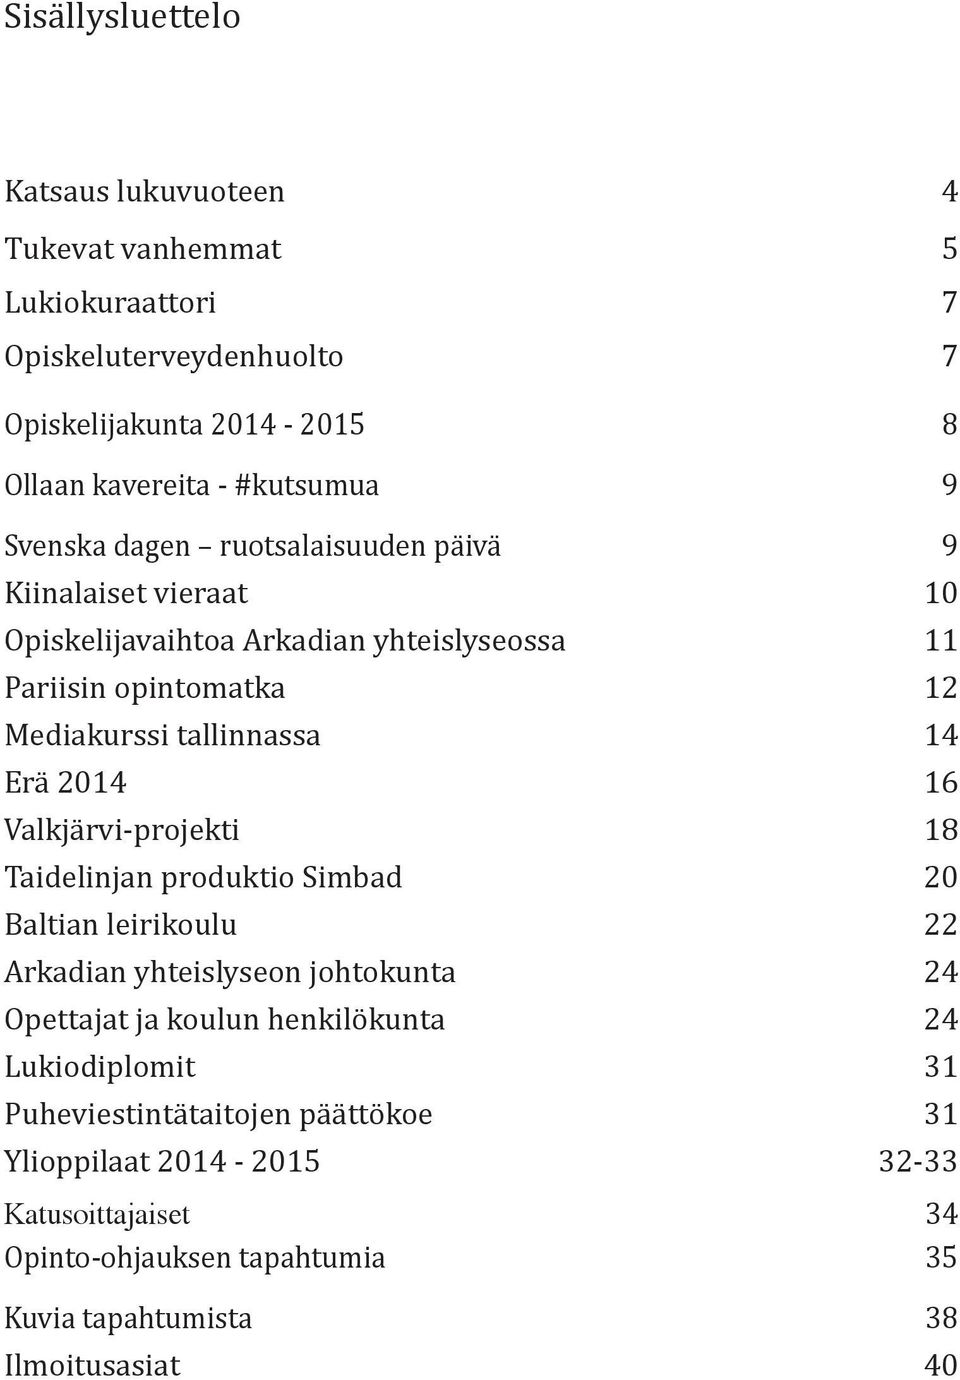 2014 16 Valkjärvi-projekti 18 Taidelinjan produktio Simbad 20 Baltian leirikoulu 22 Arkadian yhteislyseon johtokunta 24 Opettajat ja koulun henkilökunta 24